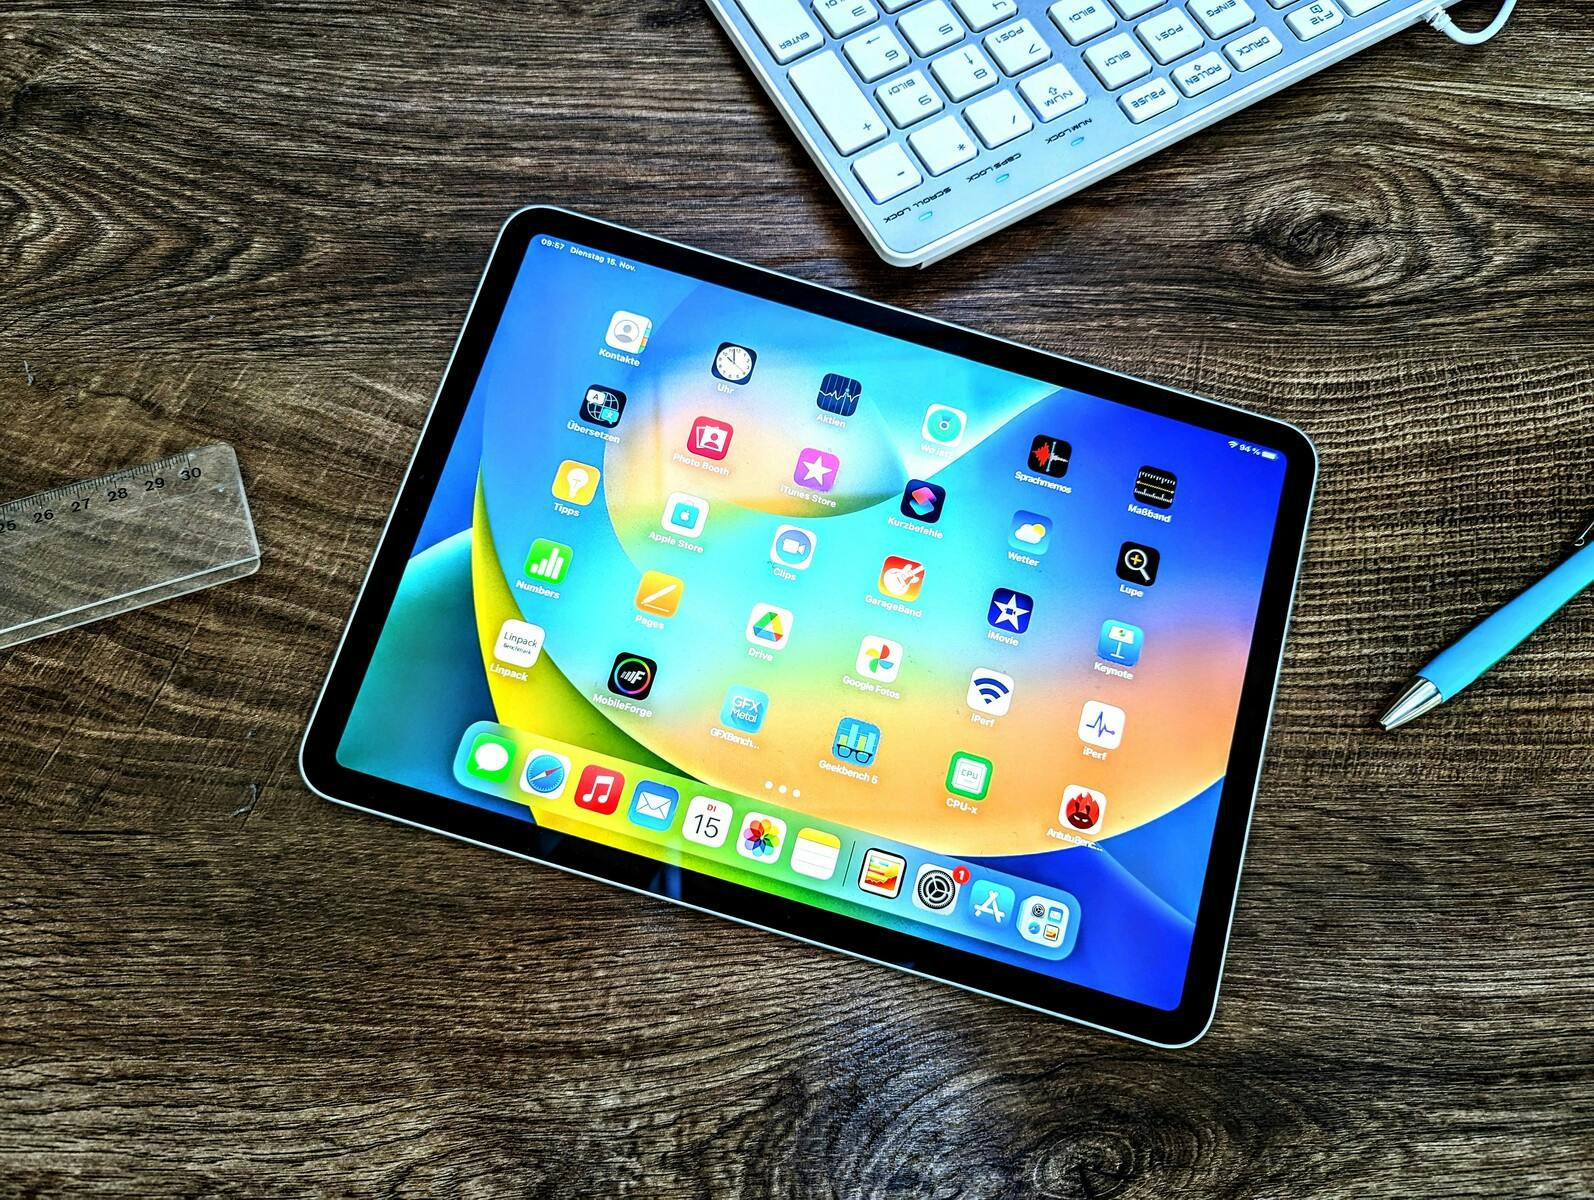 Modello di iPad da acquistare